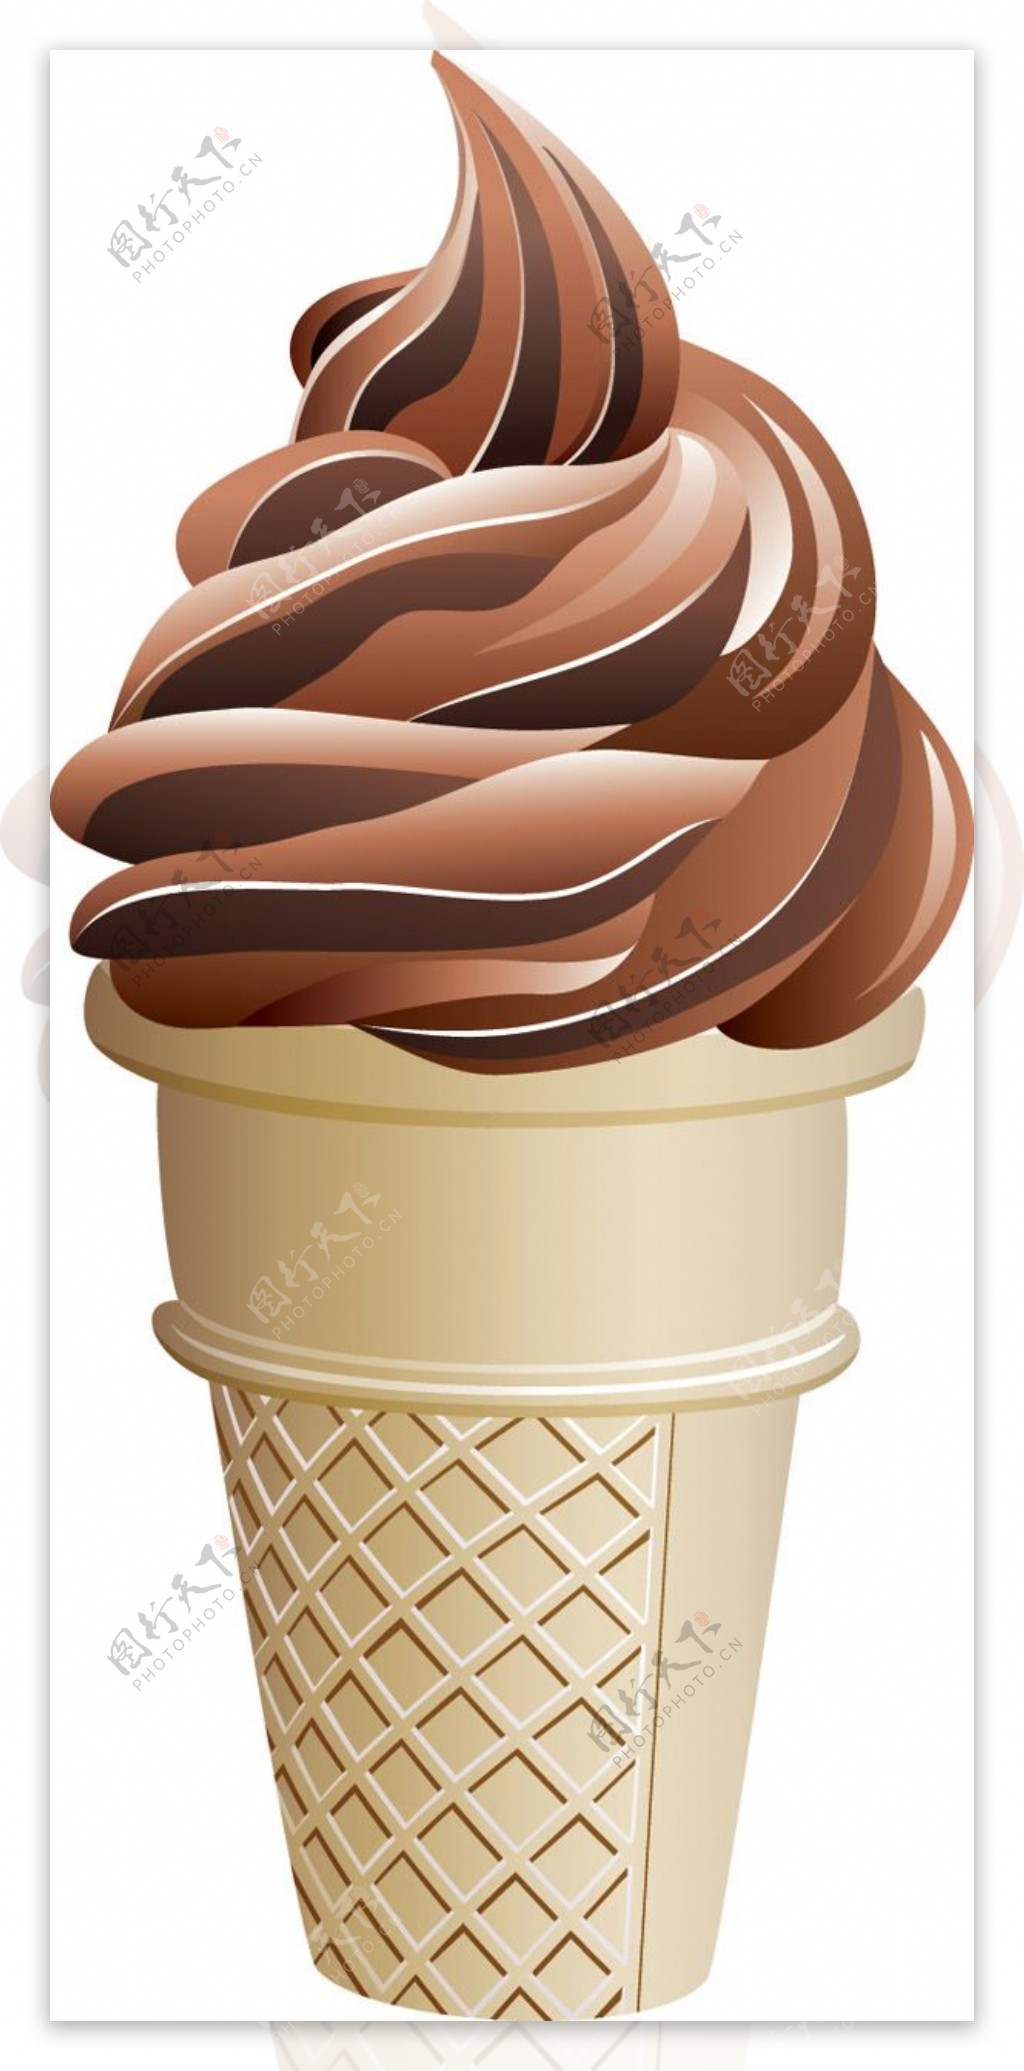 彩色冰淇淋的矢量图形